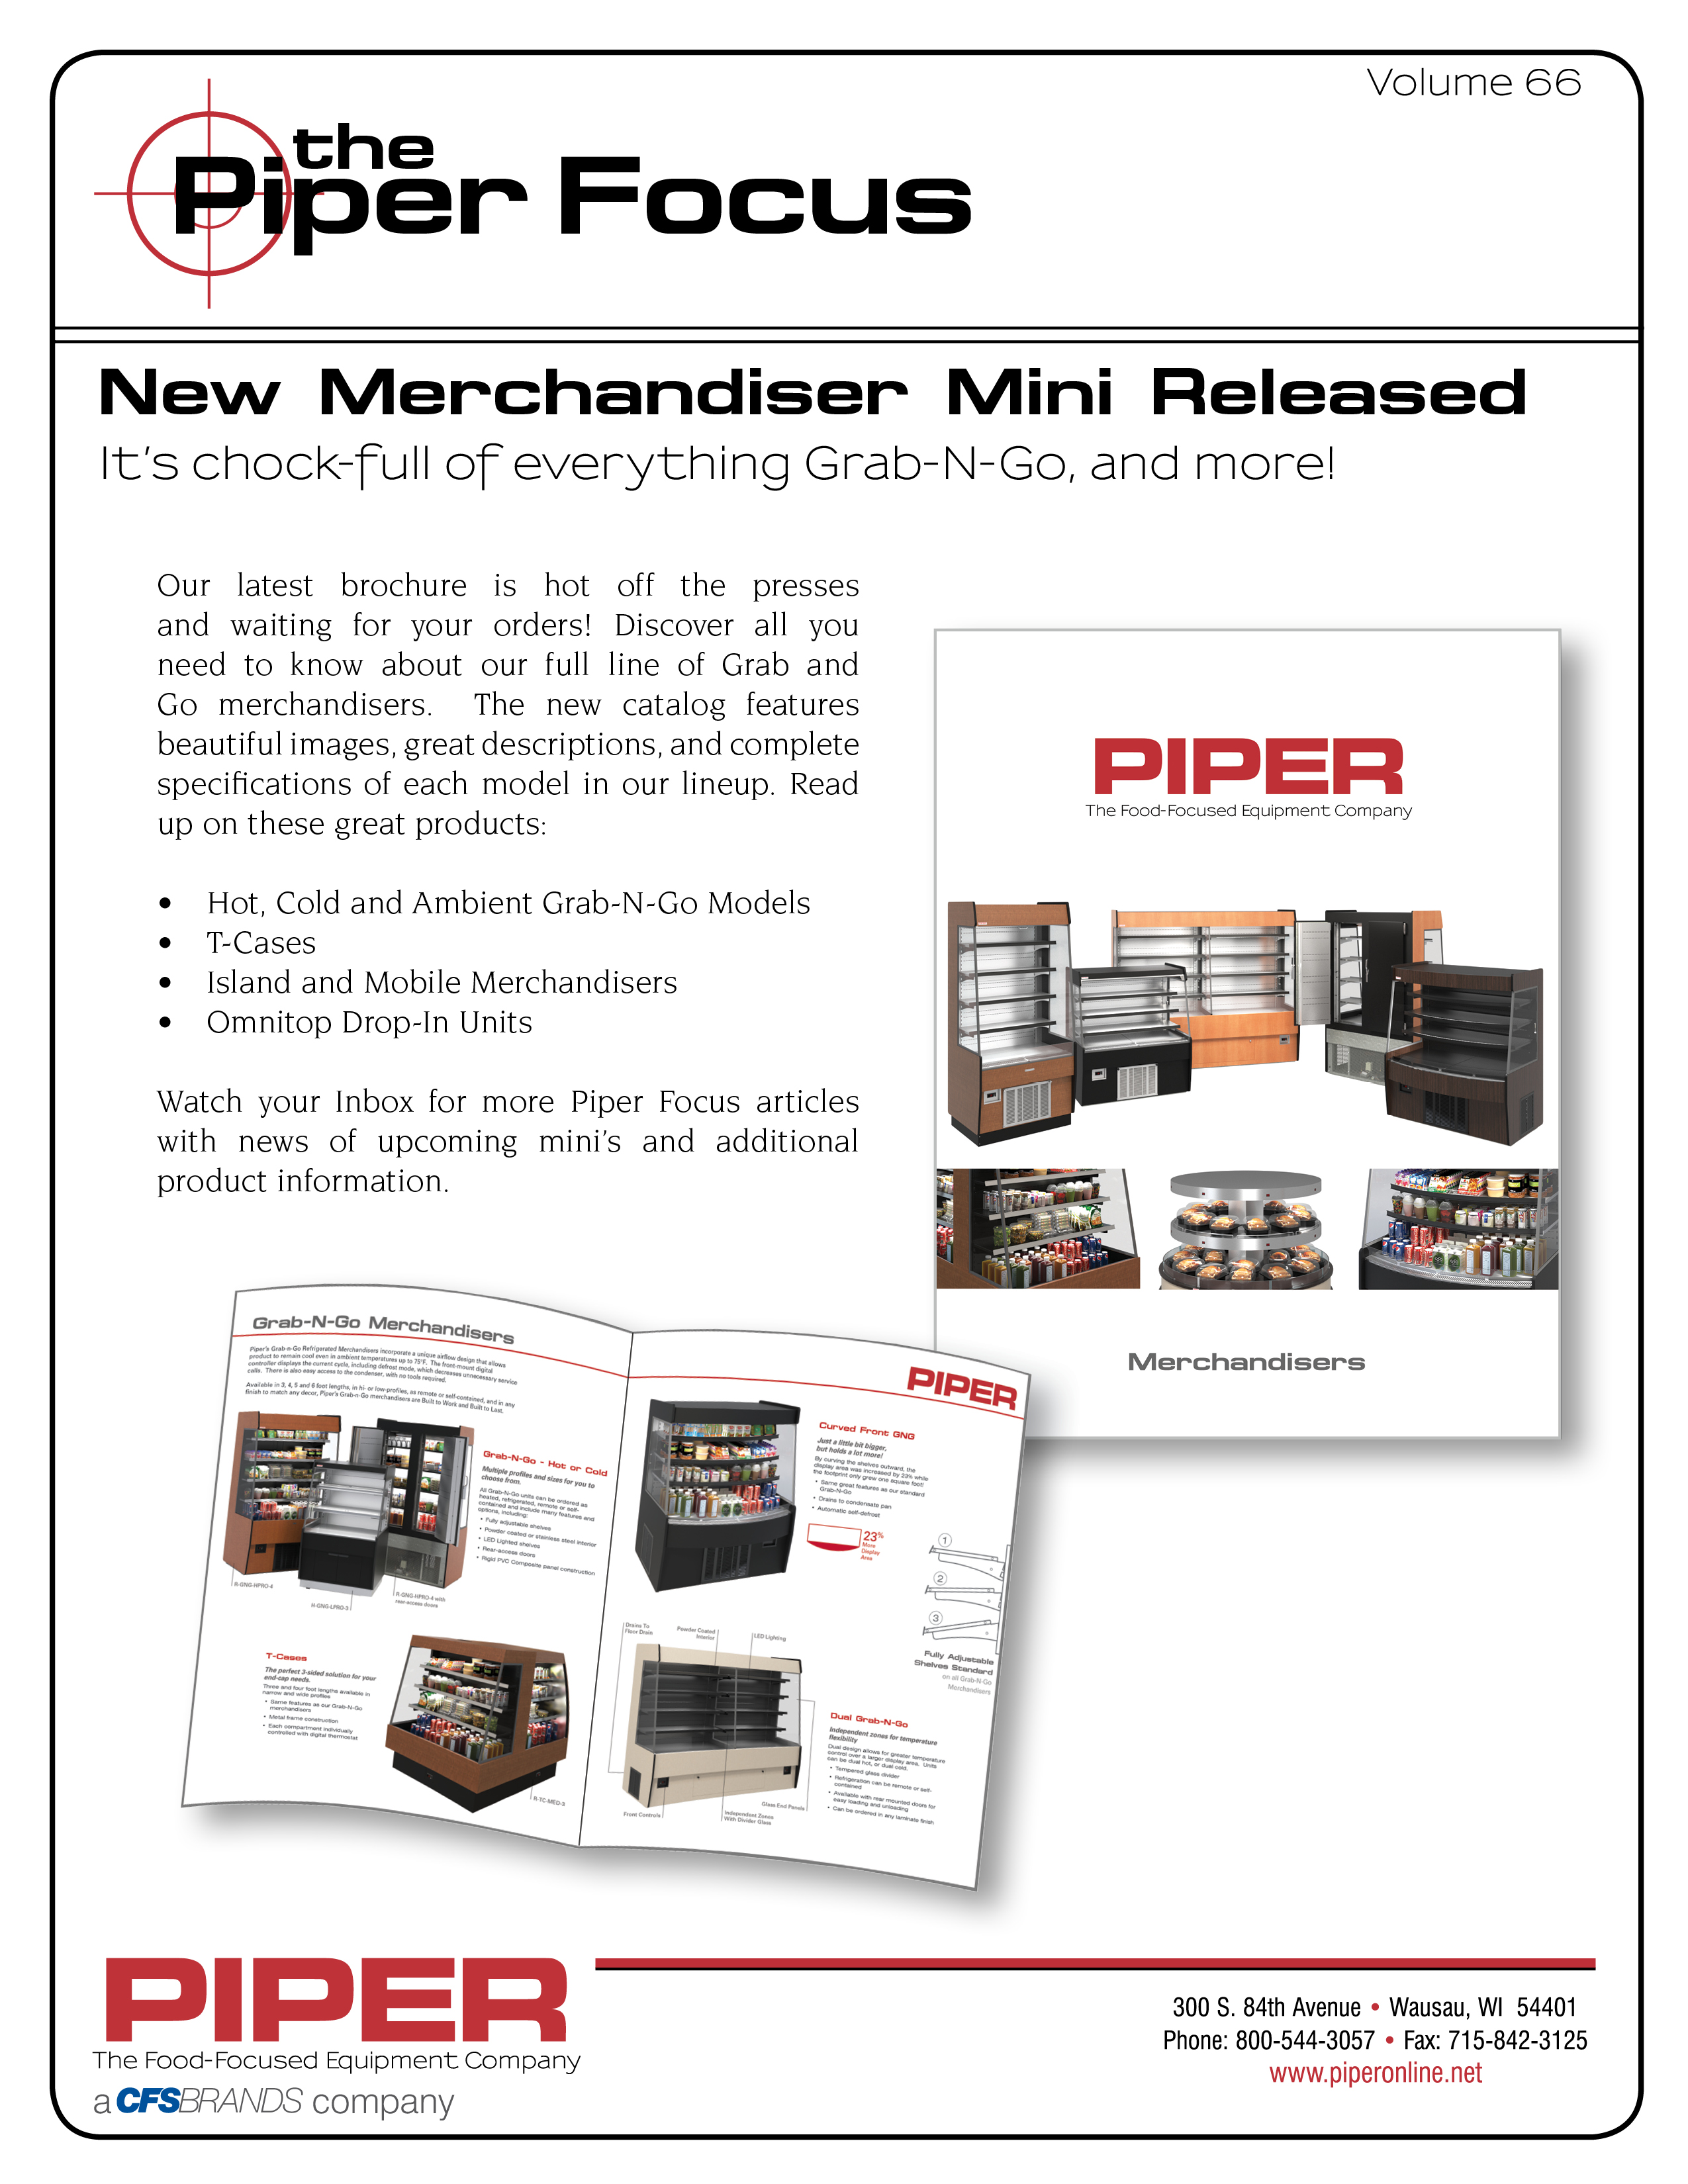 Piper Focus - New Merchandiser Mini